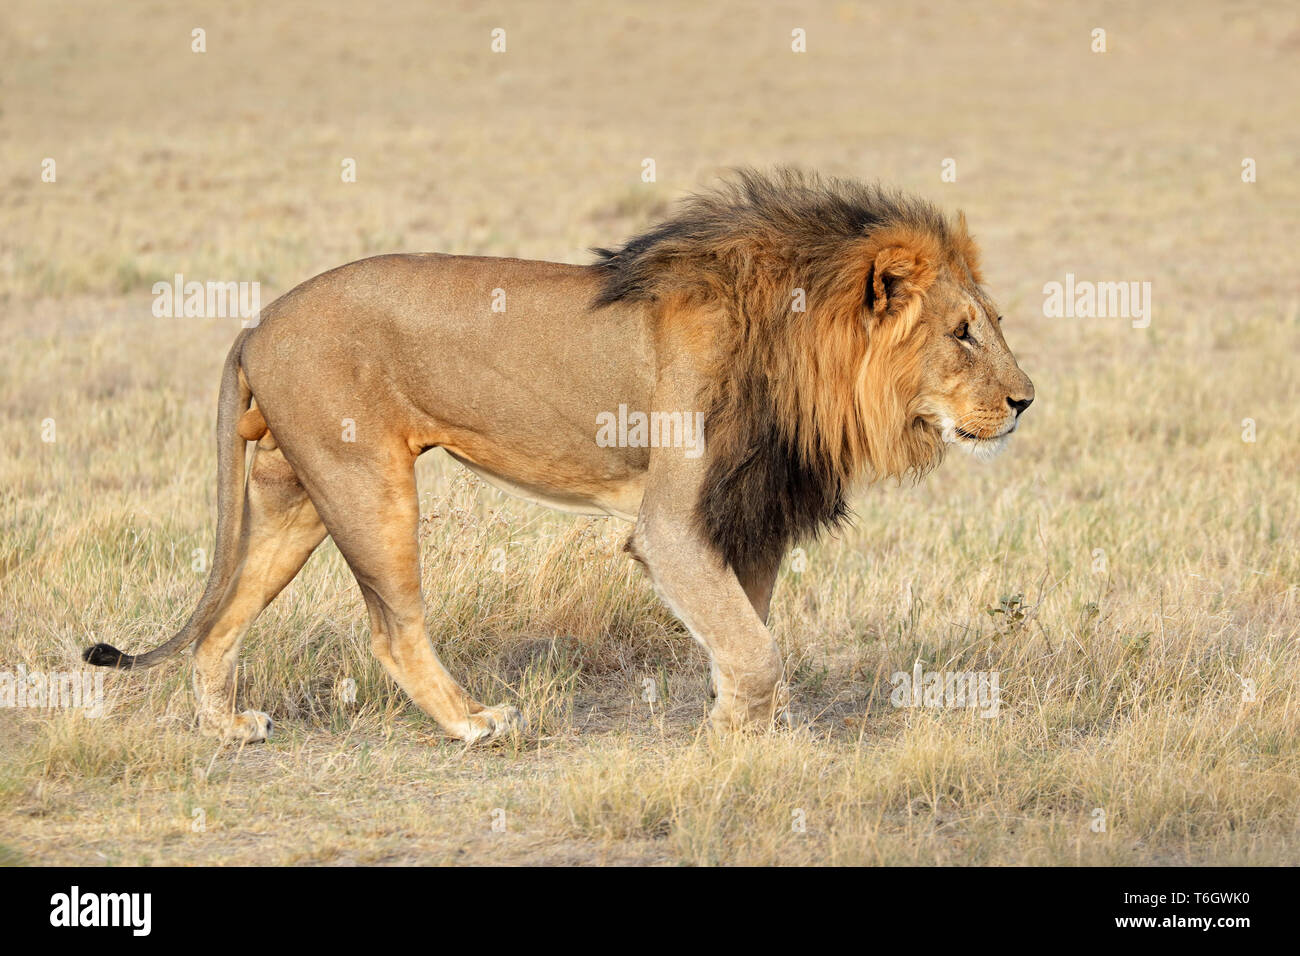 Big male African lion (Panthera leo) in natural habitat, Etosha National Park, Namibia Stock Photo